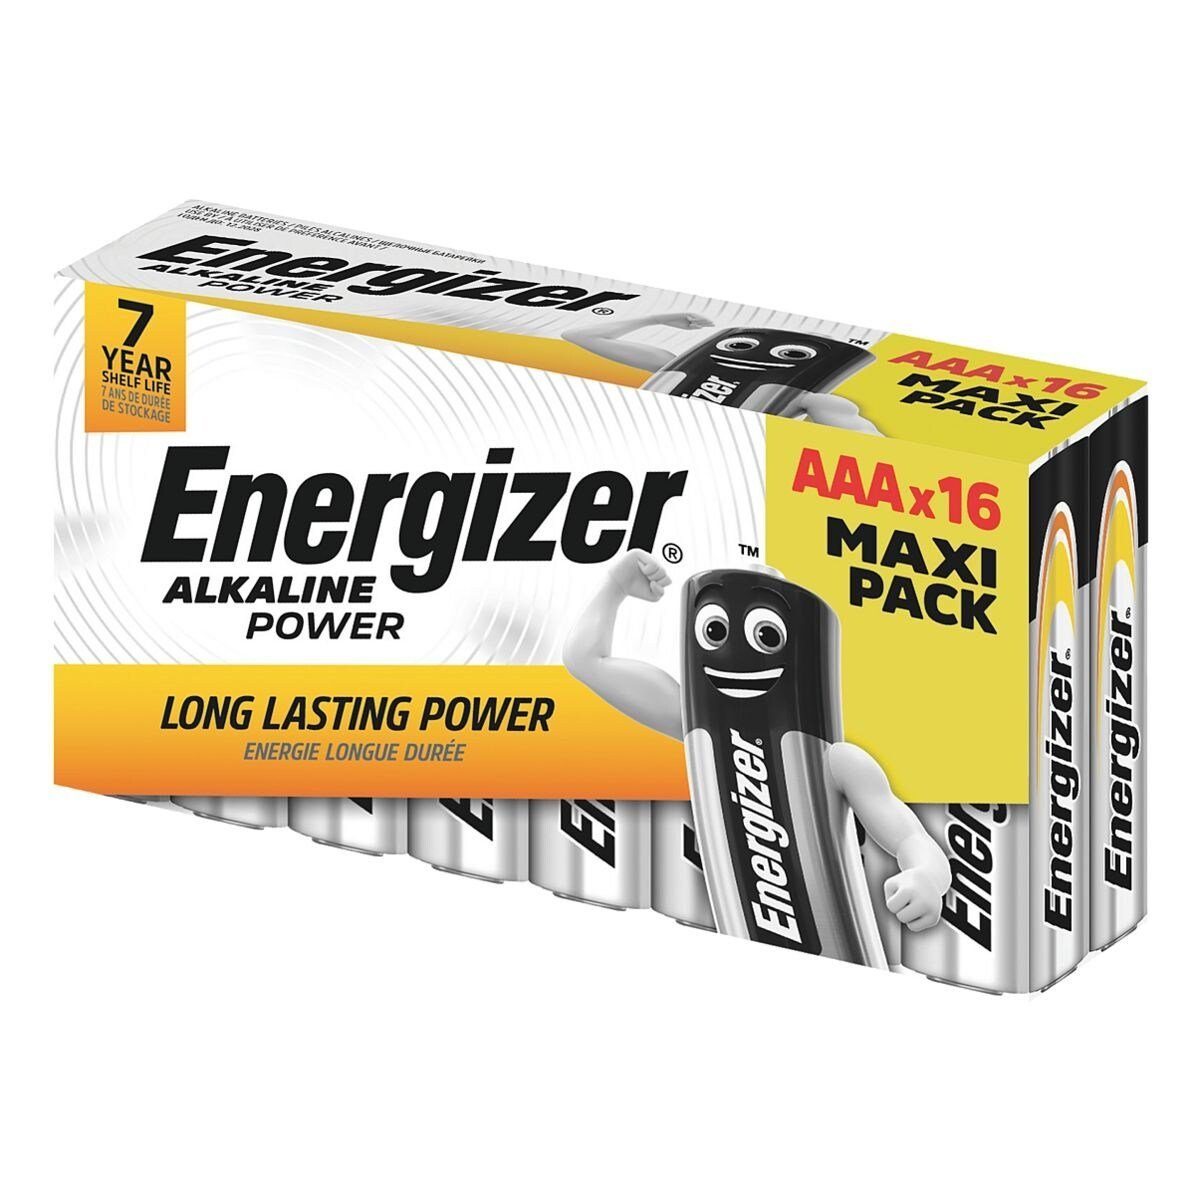 Energizer Alkaline Power Batterie, (16 St), Micro / AAA, 1,5 V, Alkali